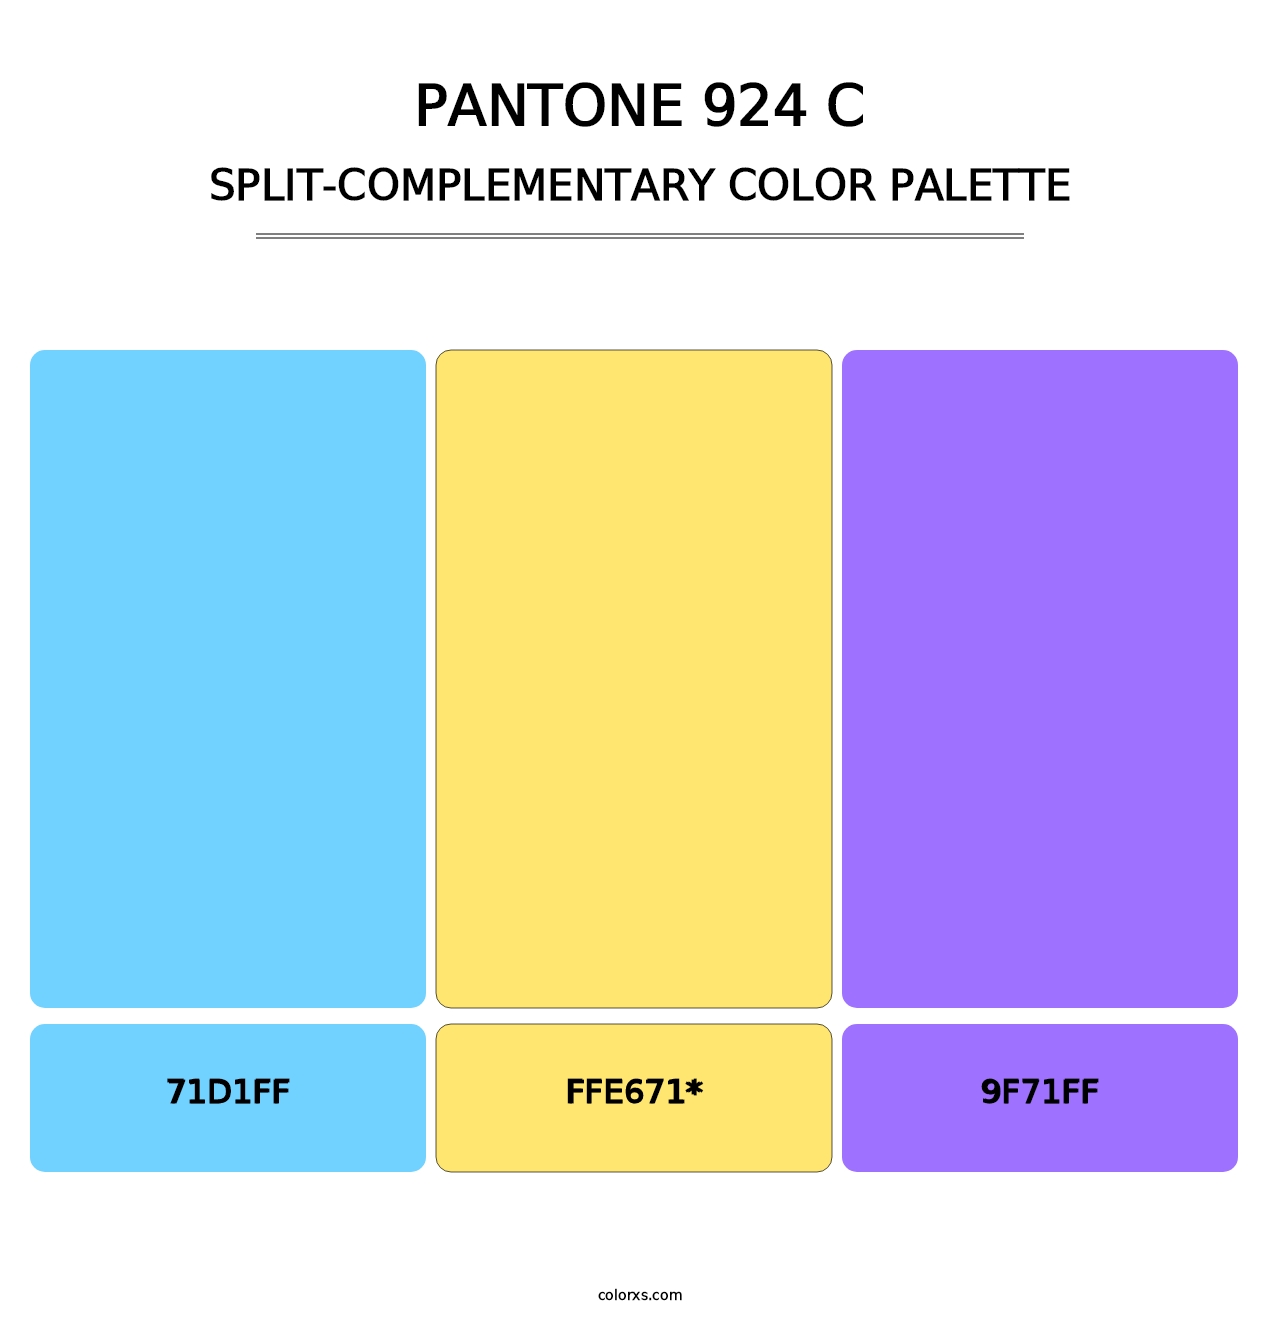 PANTONE 924 C - Split-Complementary Color Palette